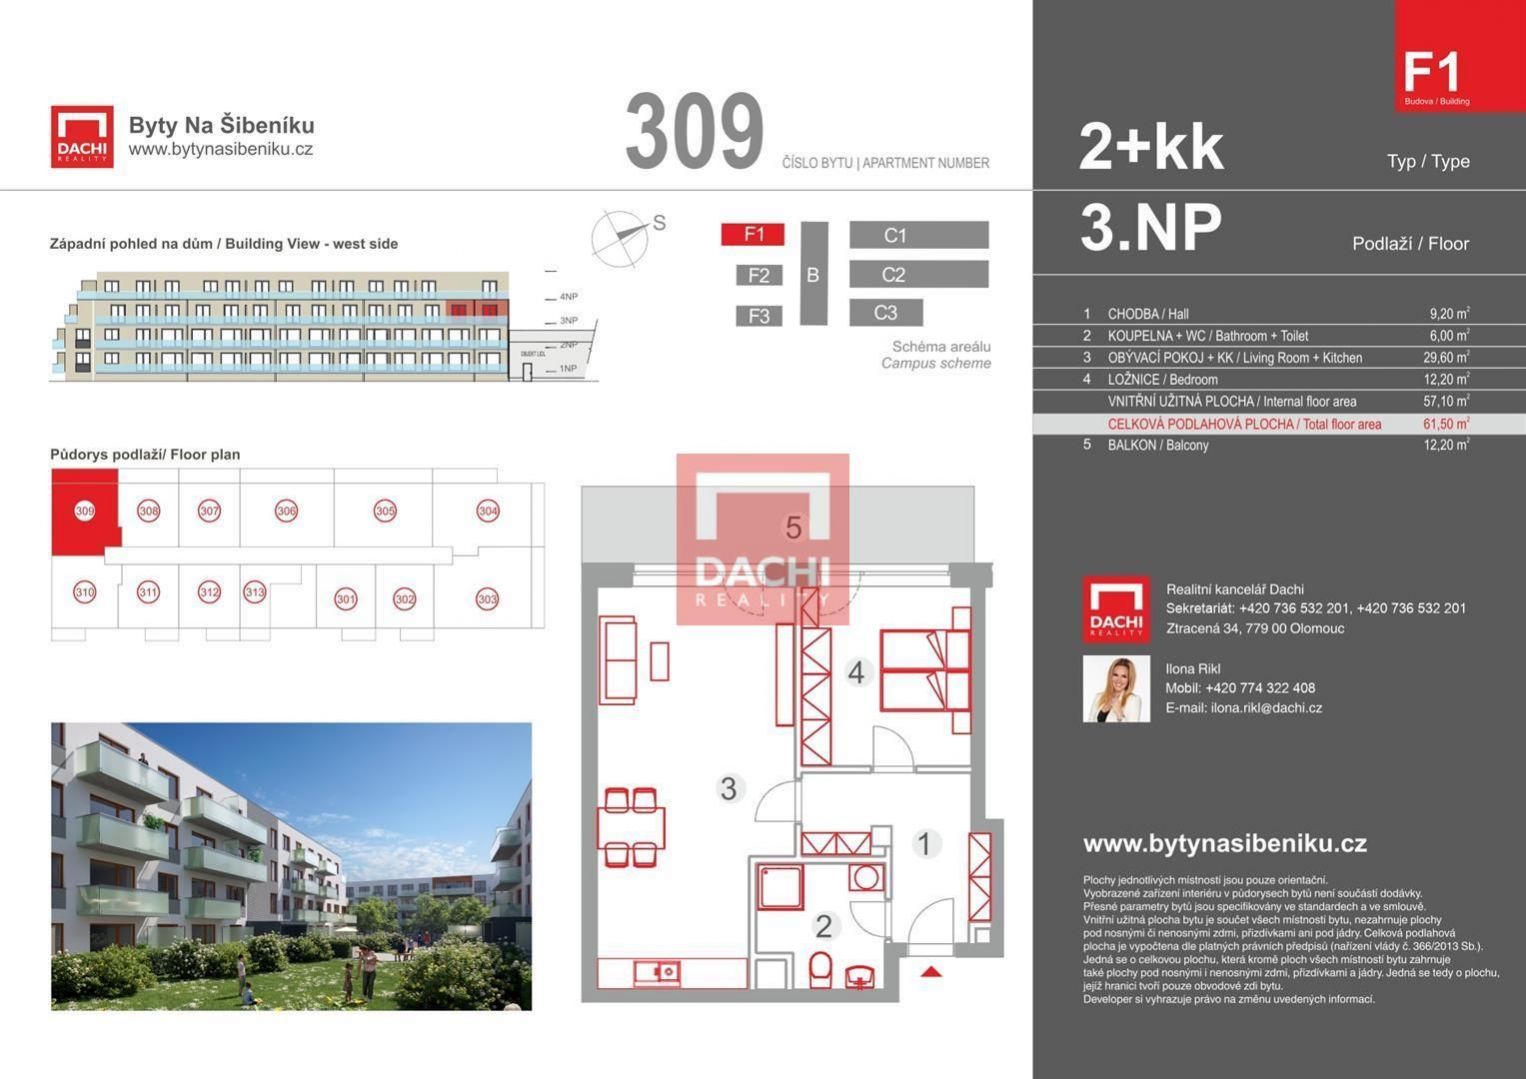 Prodej novostavby byt F1.309  2+kk 61,50 m s balkonem 12,20 m, Olomouc, Byty Na Šibeníku II.etapa, obrázek č. 3